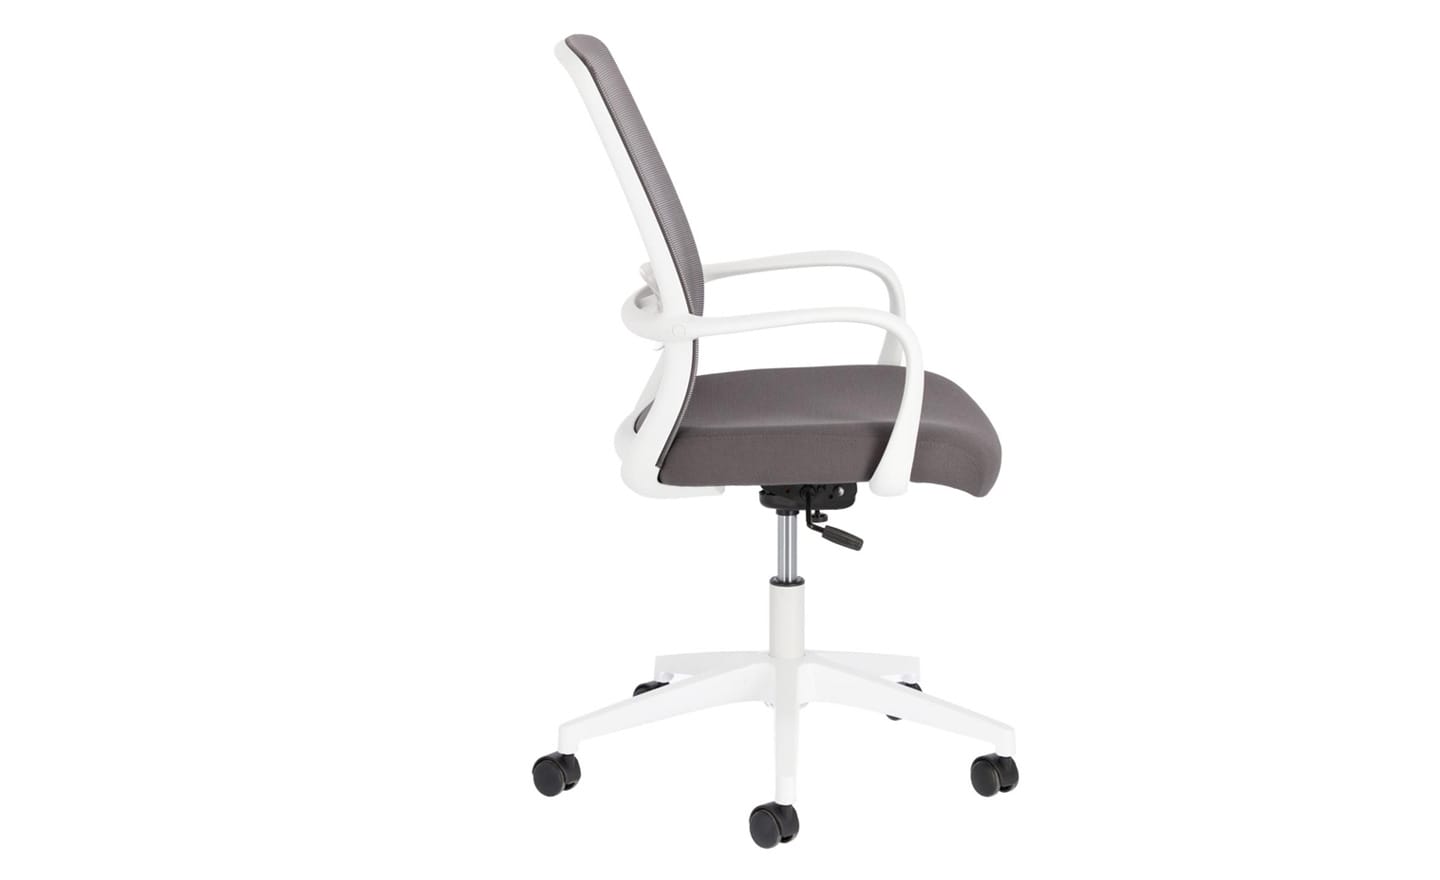 Cadeira de Escritório Melva Cinza - CC5189J03. Design elegante com assento giratório e altura ajustável. Ideal para tornar o seu escritório em casa mais confortável e produtivo. Moveistore